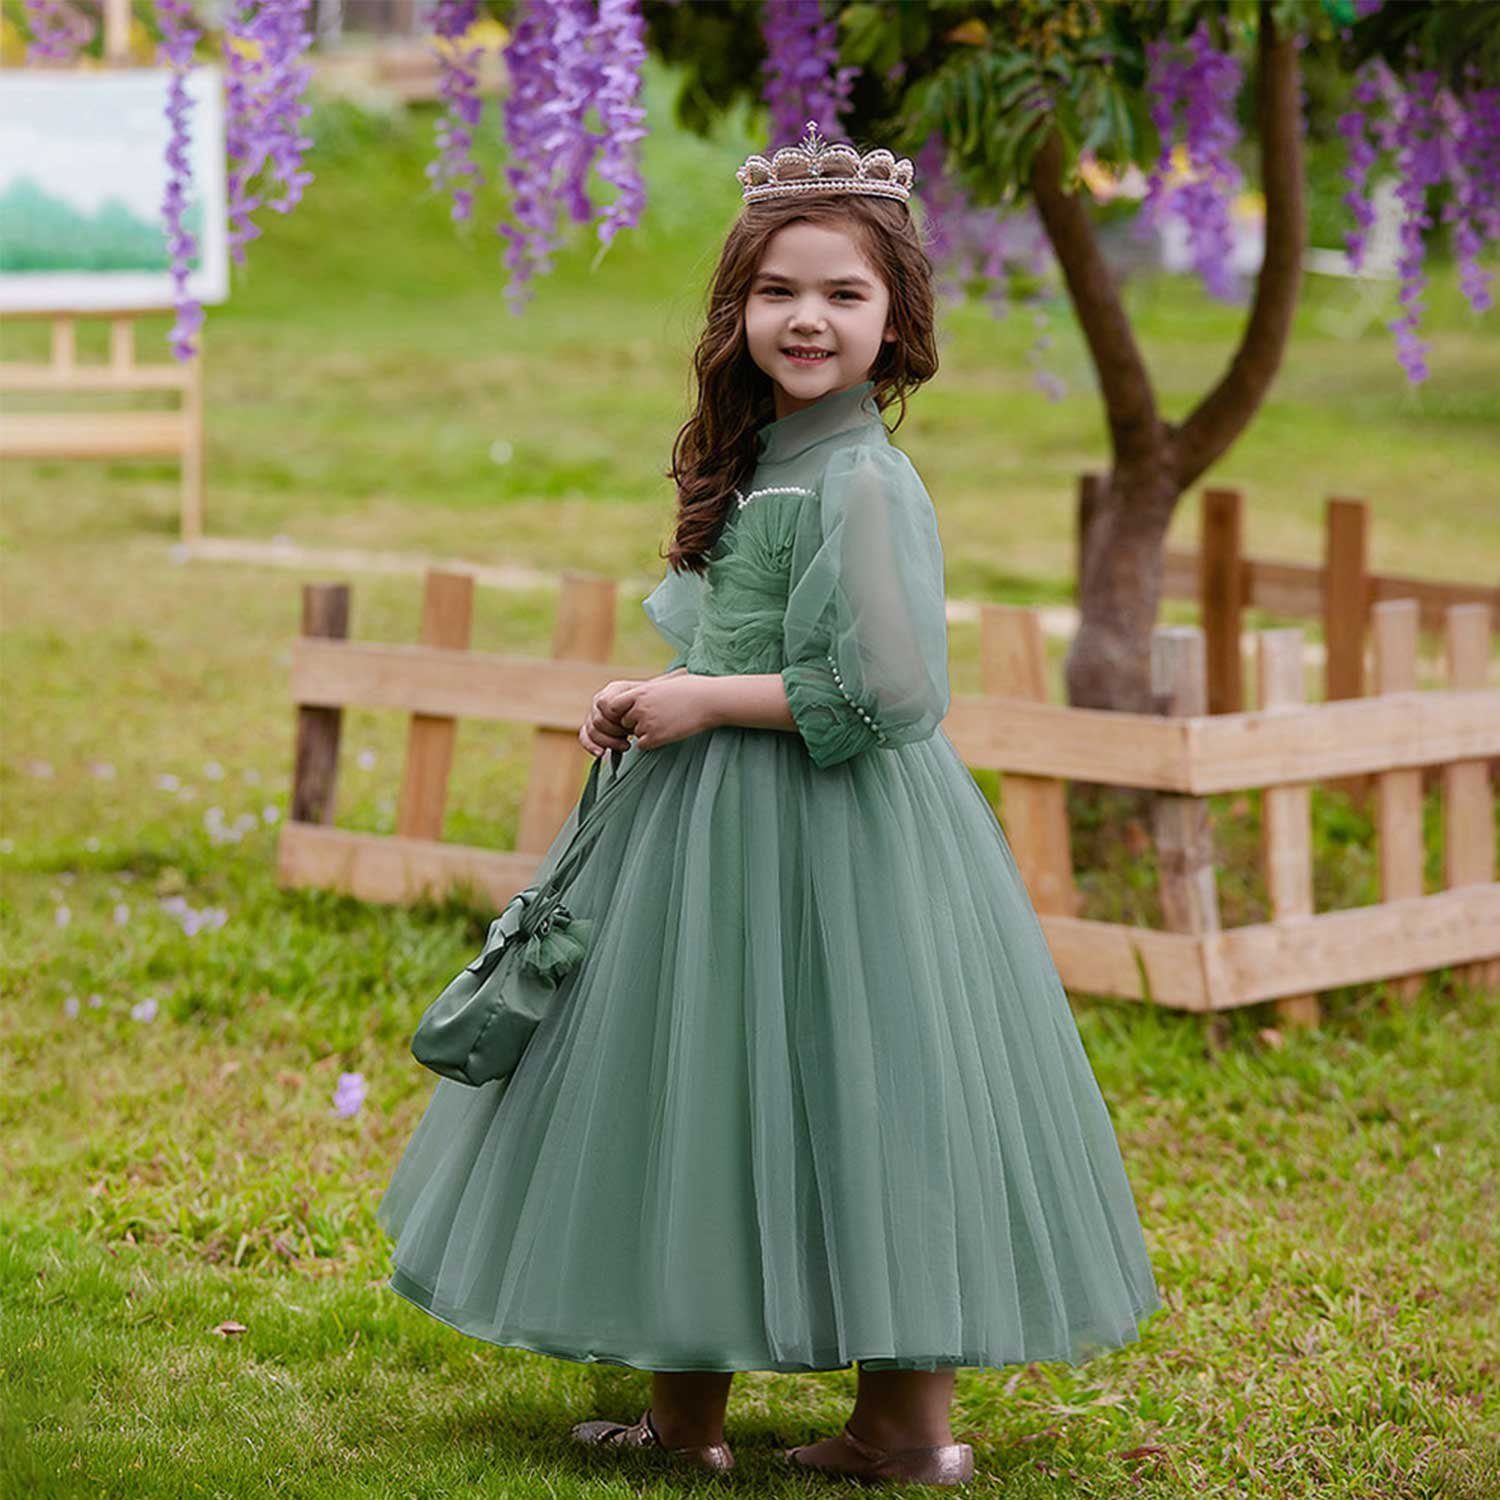 Daisred Tüllkleid Blumenmädchenkleid Grün Prinzessinnenkleid Geburtstagsparty